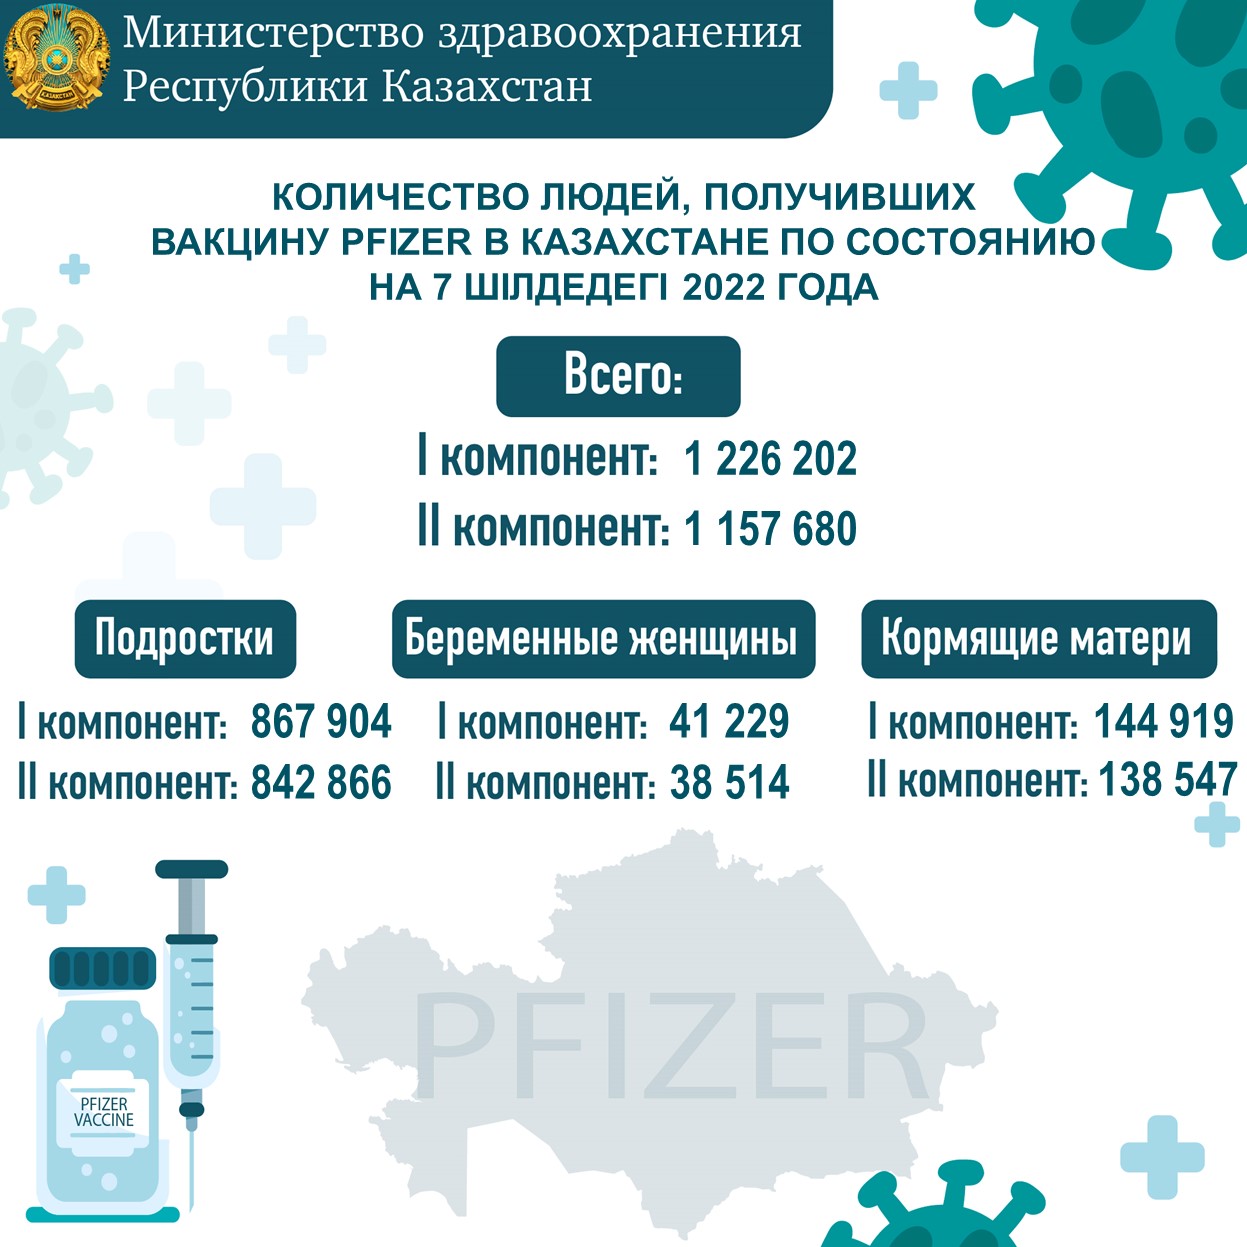 Количество людей, получивших вакцину Рfizer в Казахстане по состоянию на 7.07.2022 года